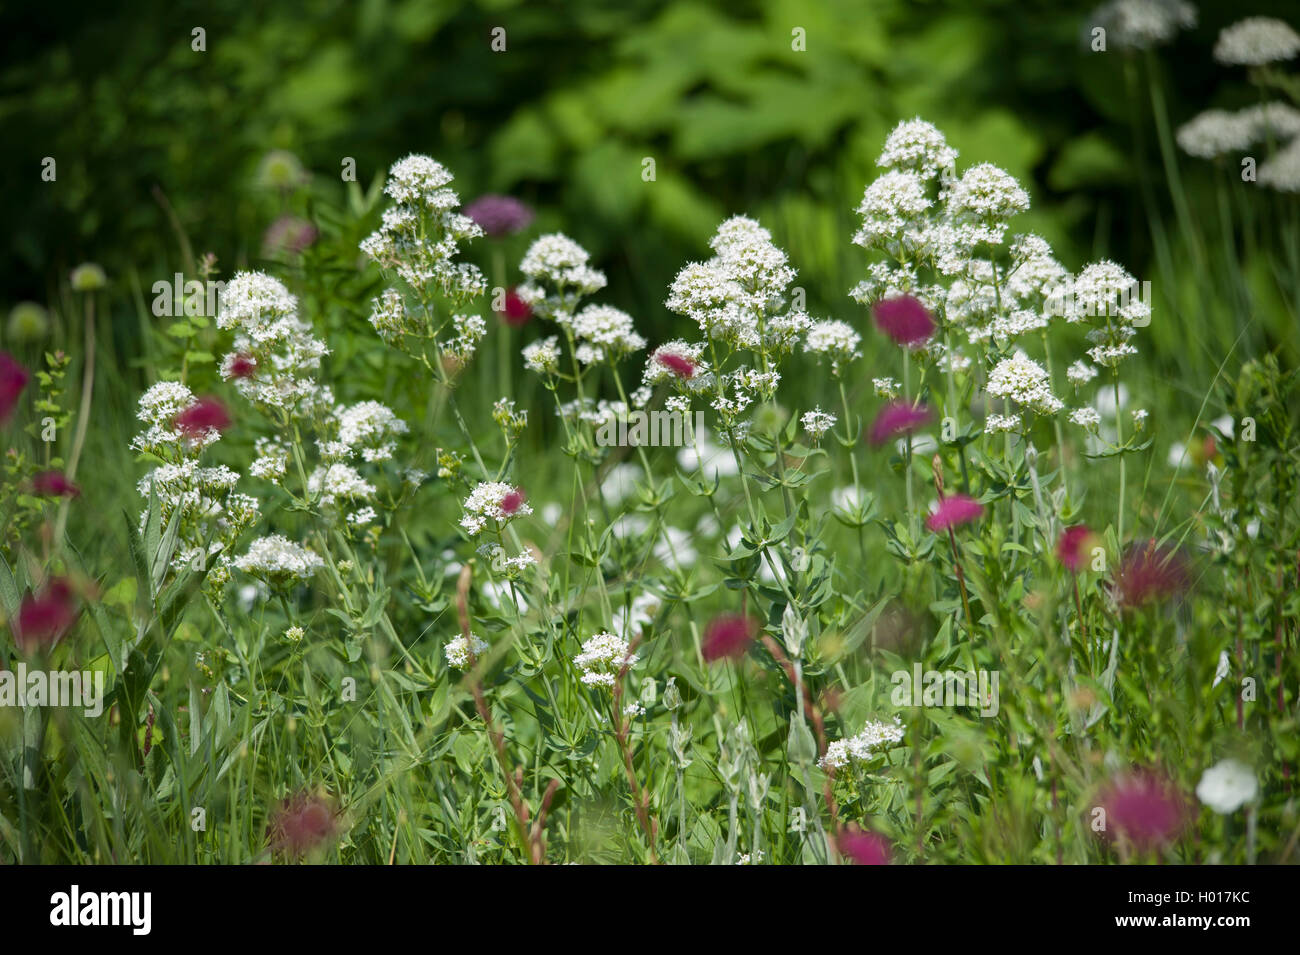 Weisse Spornblume, Rote Spornblume (Centranthus ruber 'Albus', Centranthus ruber Albus), weissbluehende Sorte Albus | Red valeri Stock Photo